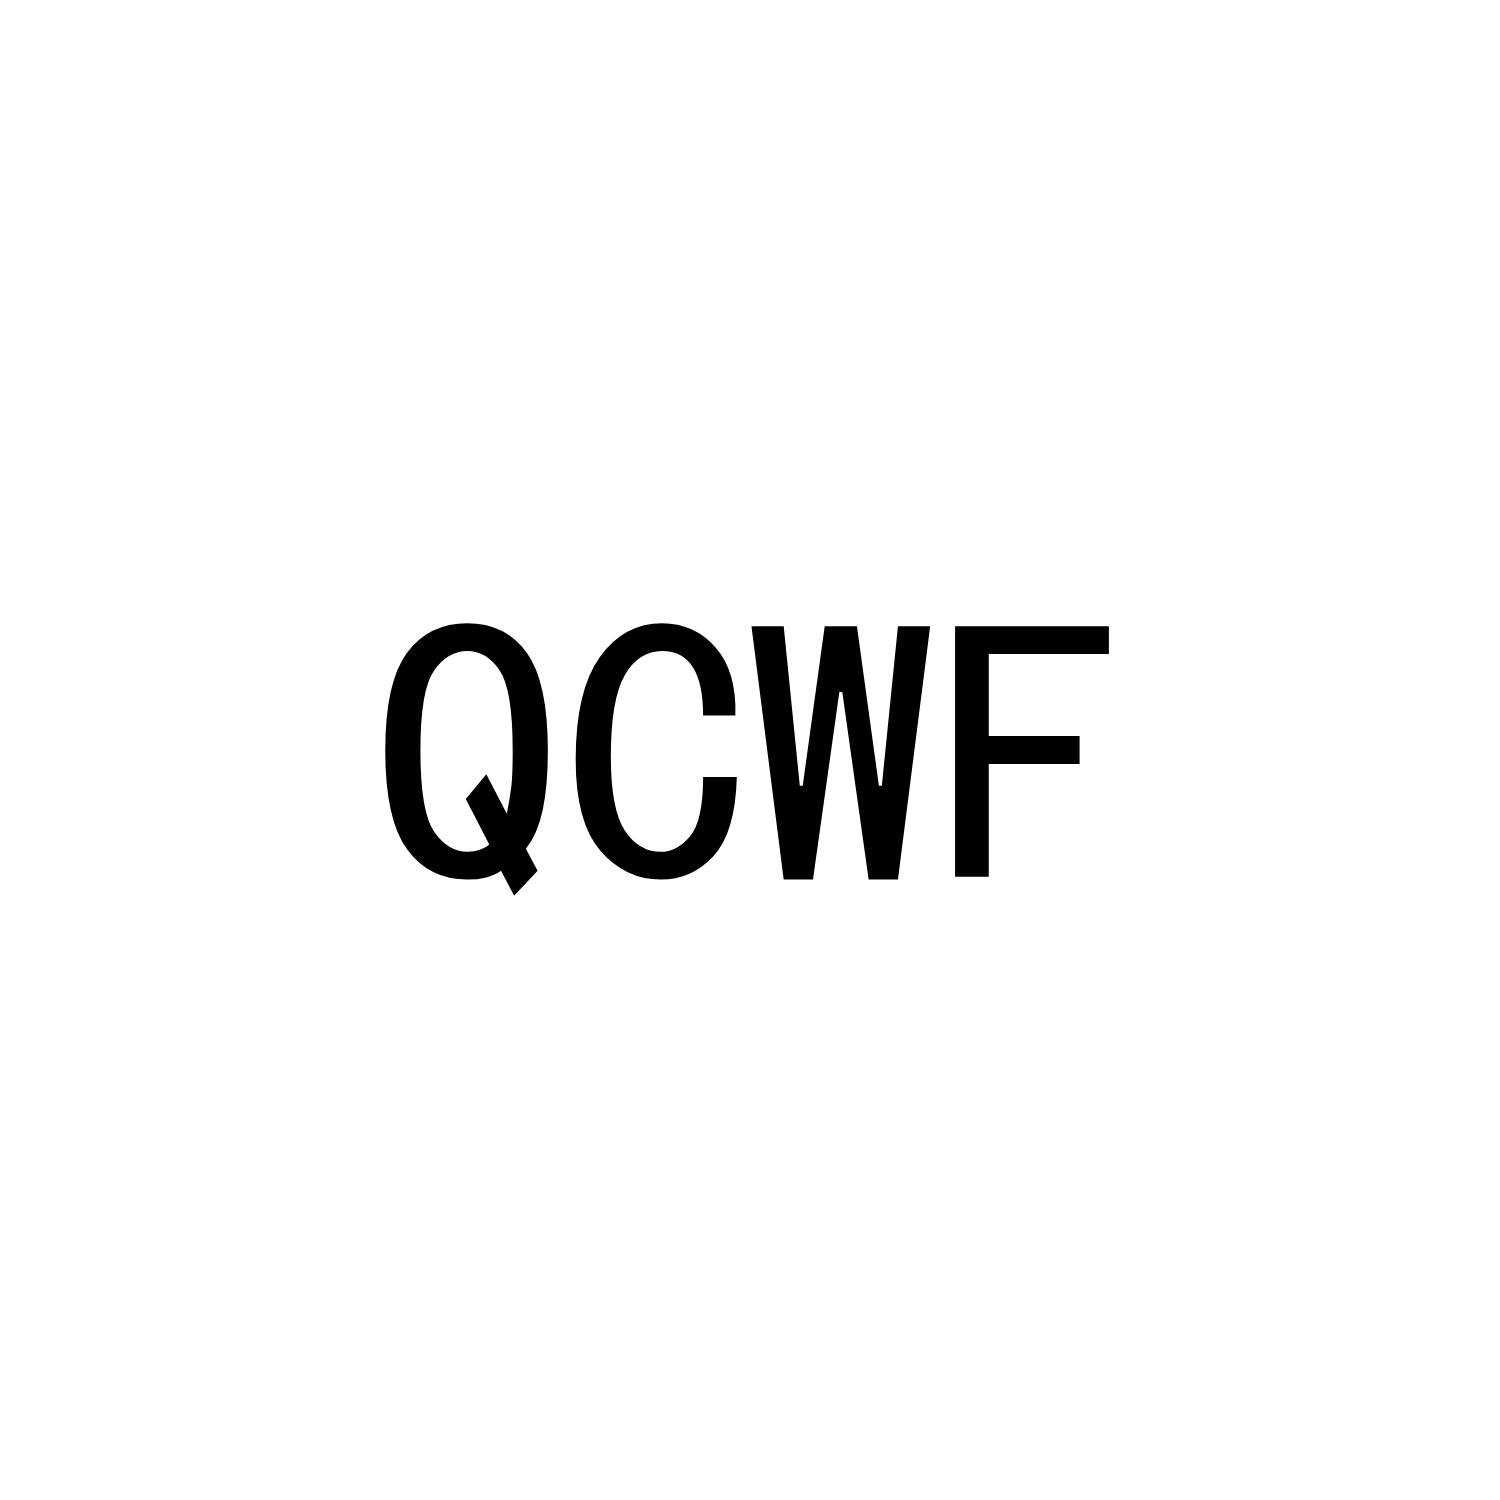 QCWF